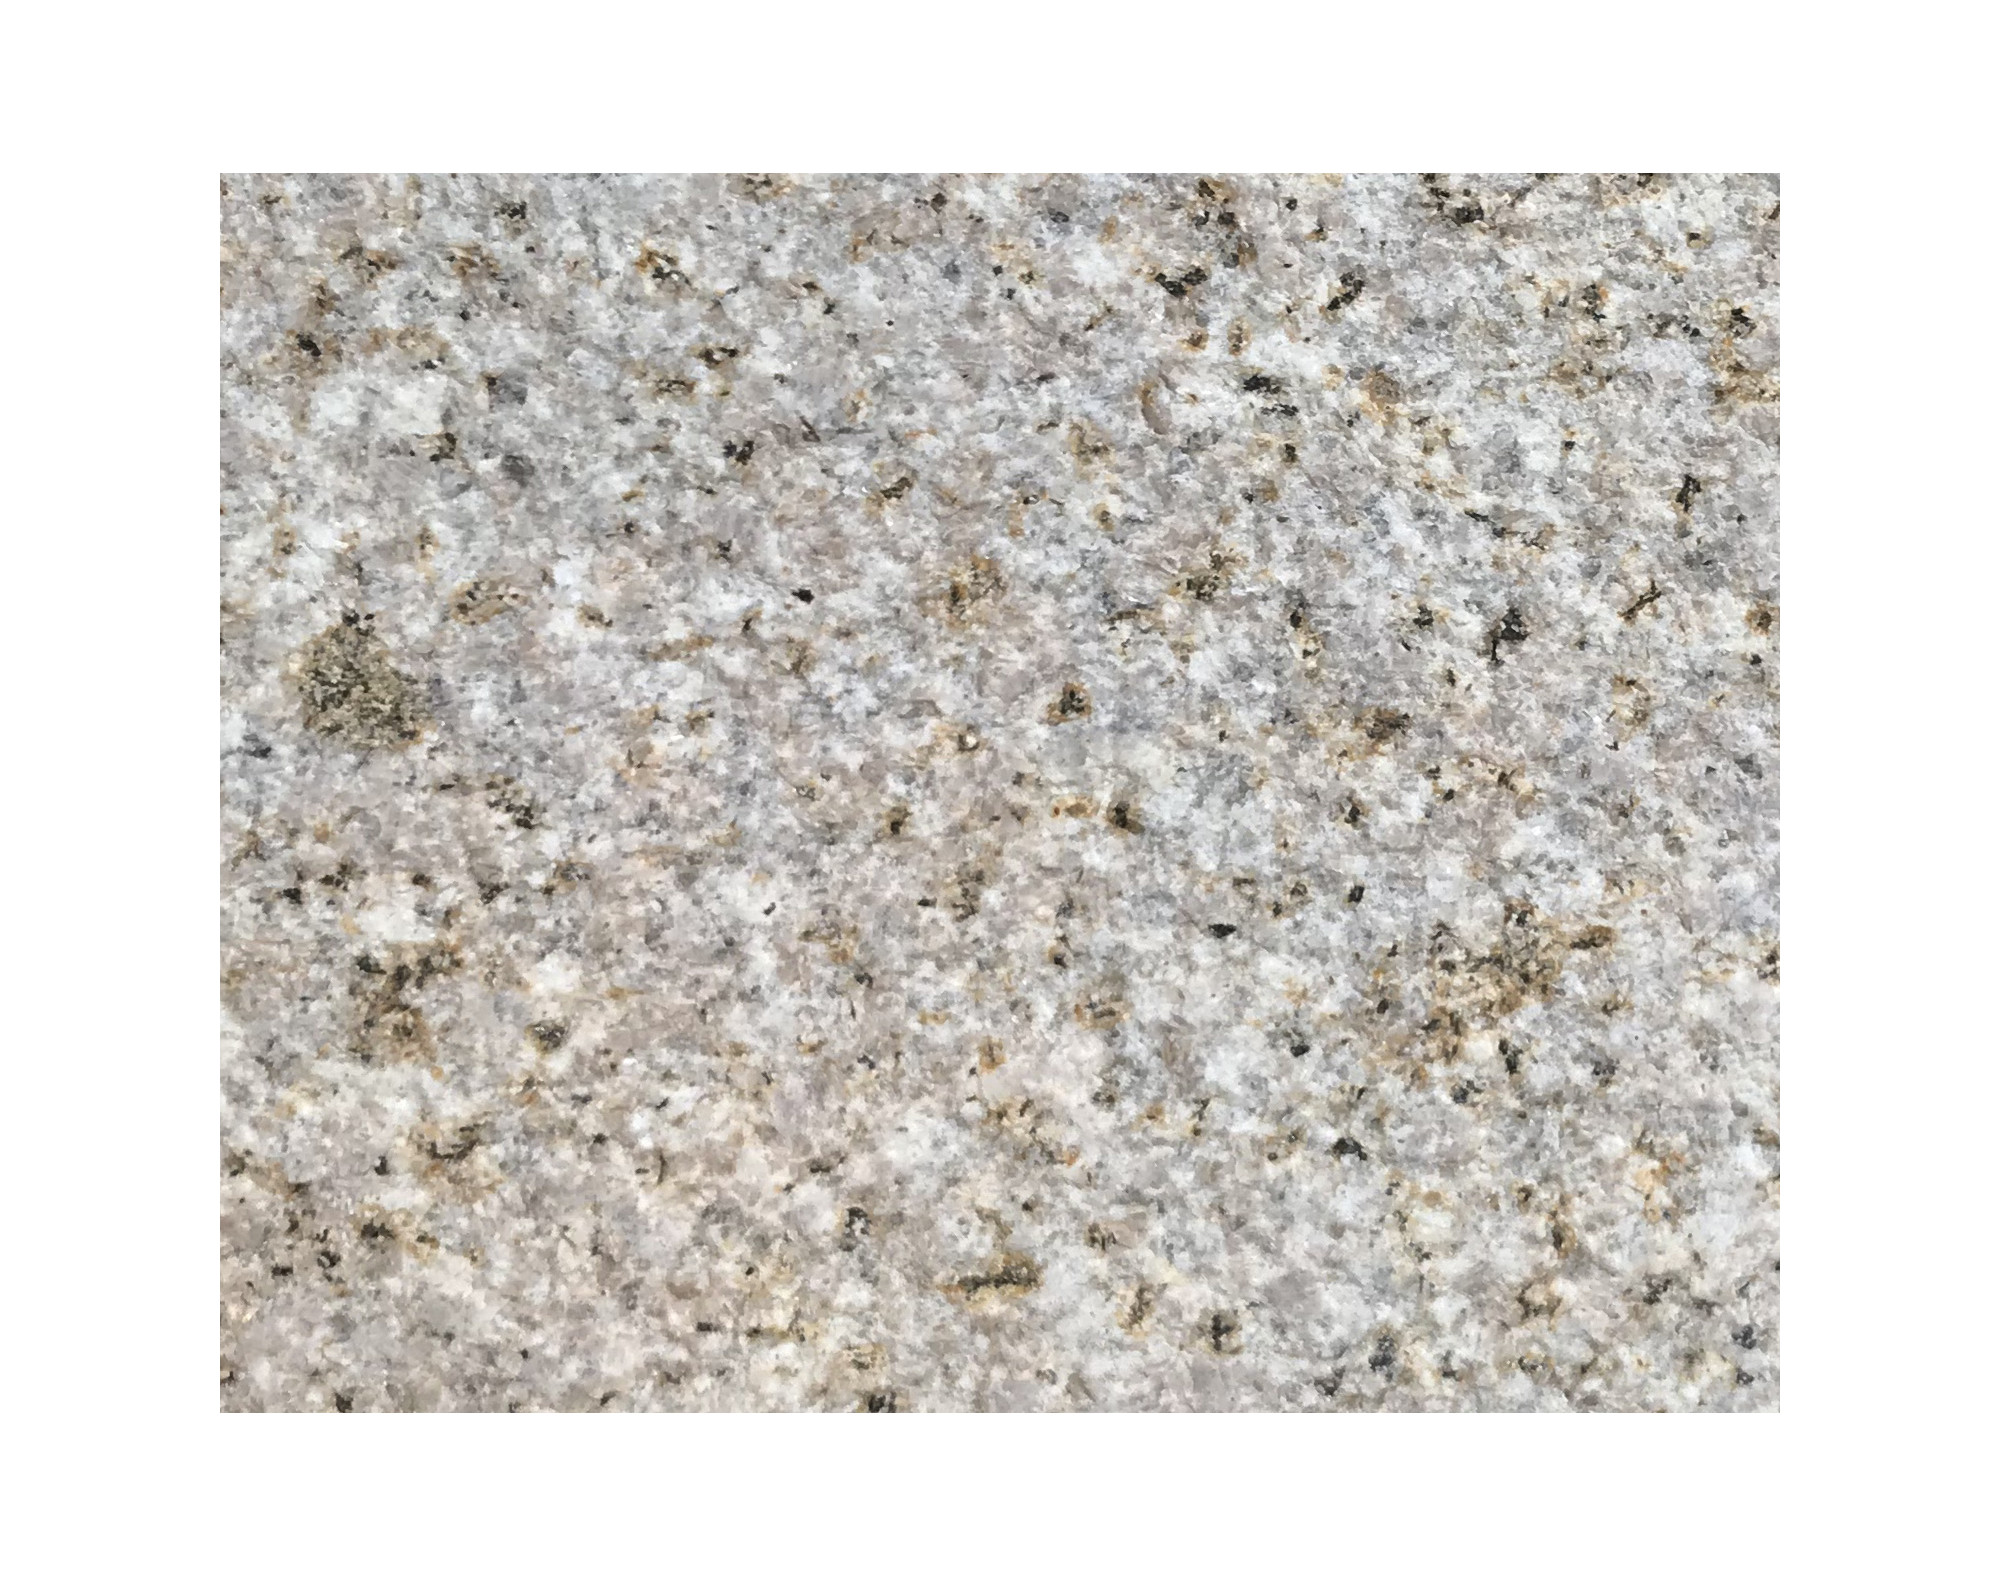 Harmo roc napoliset, natura-serie, ovaal d:3,00mx7,00m, zachtzand, graniet